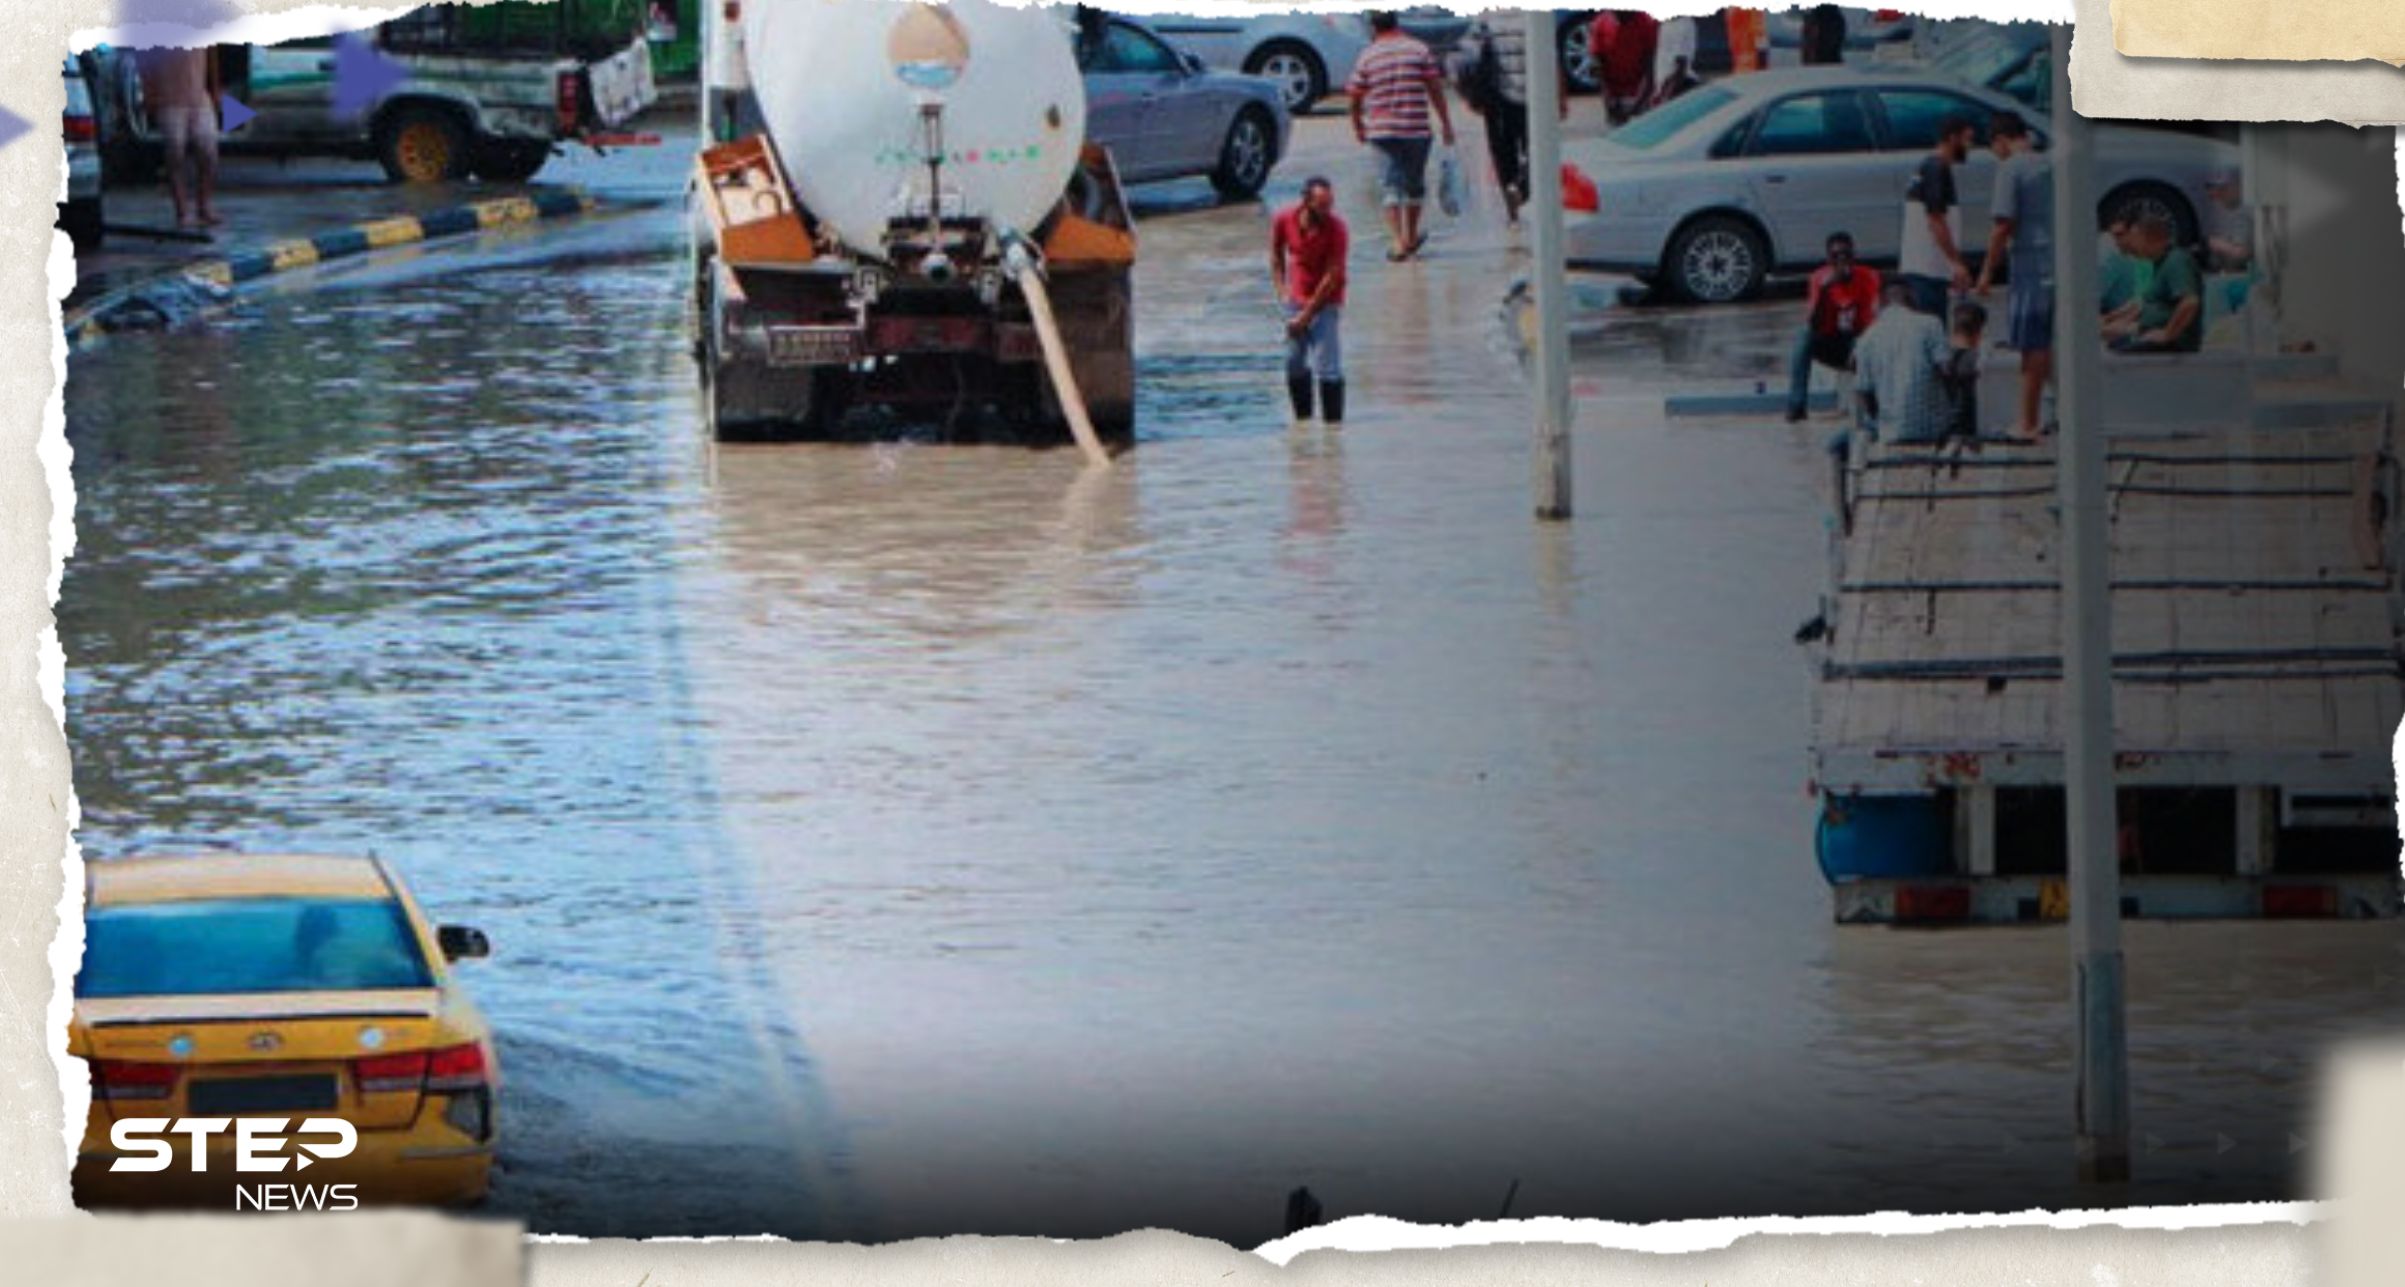 الفيضانات في ليبيا تحصد 150 قتيلاً وتدمر إحدى مدنها.. ومشاهد توثق حجم الكارثة